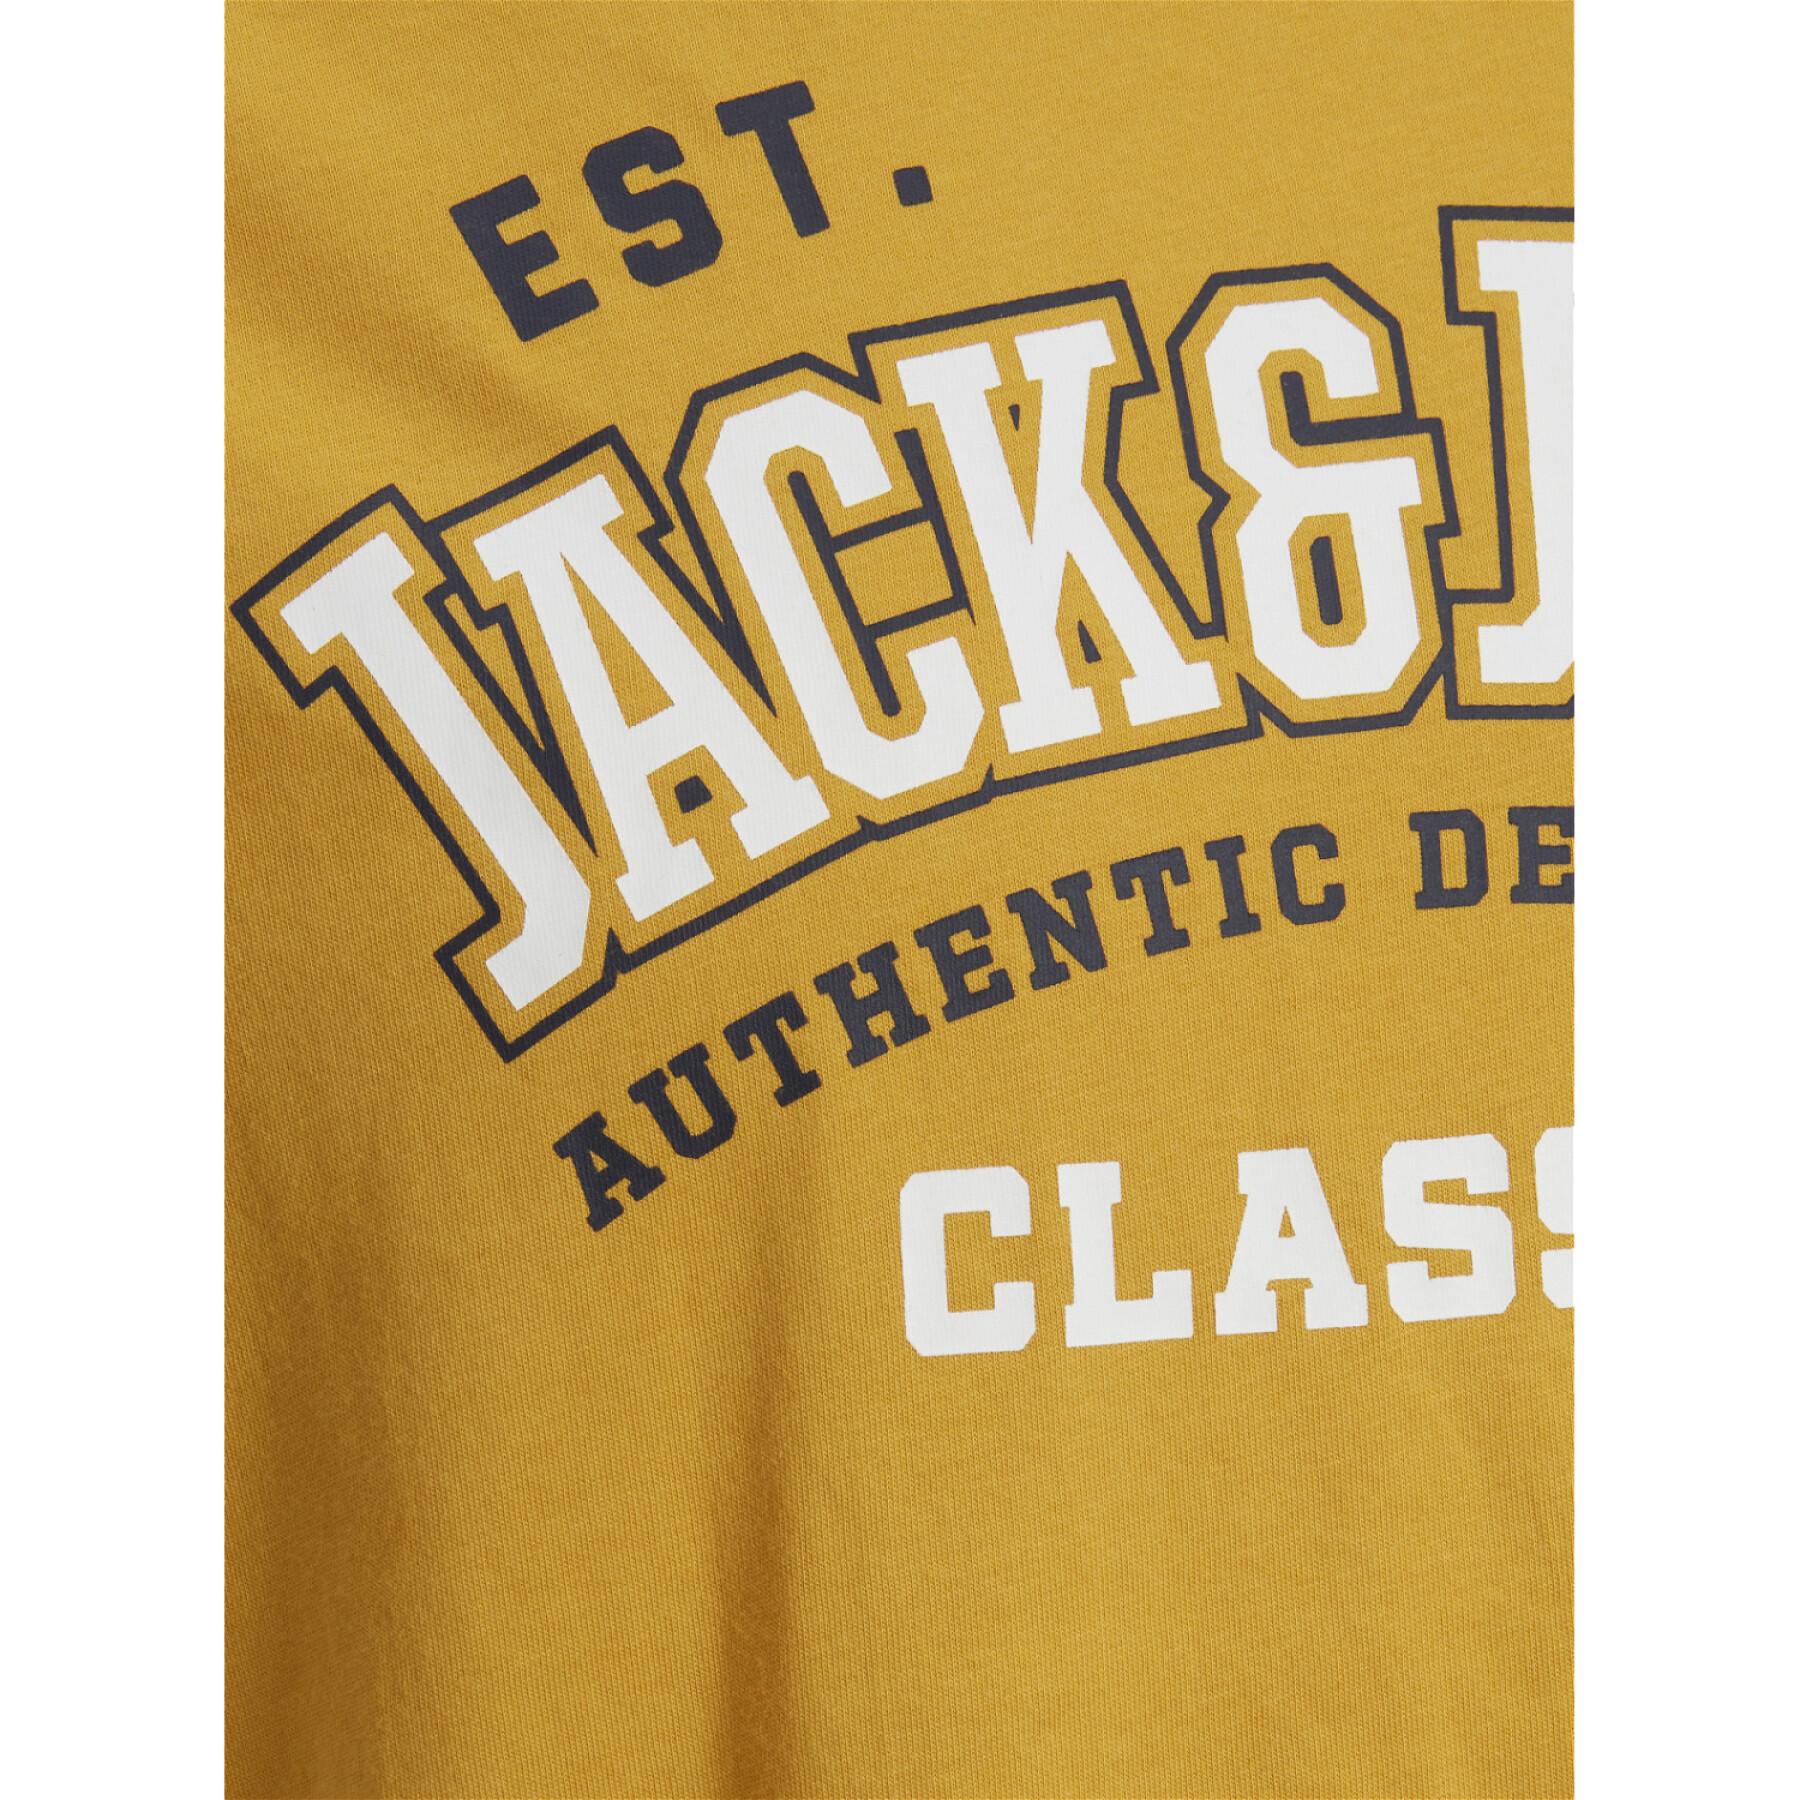 T-shirt de criança Jack & Jones Logo